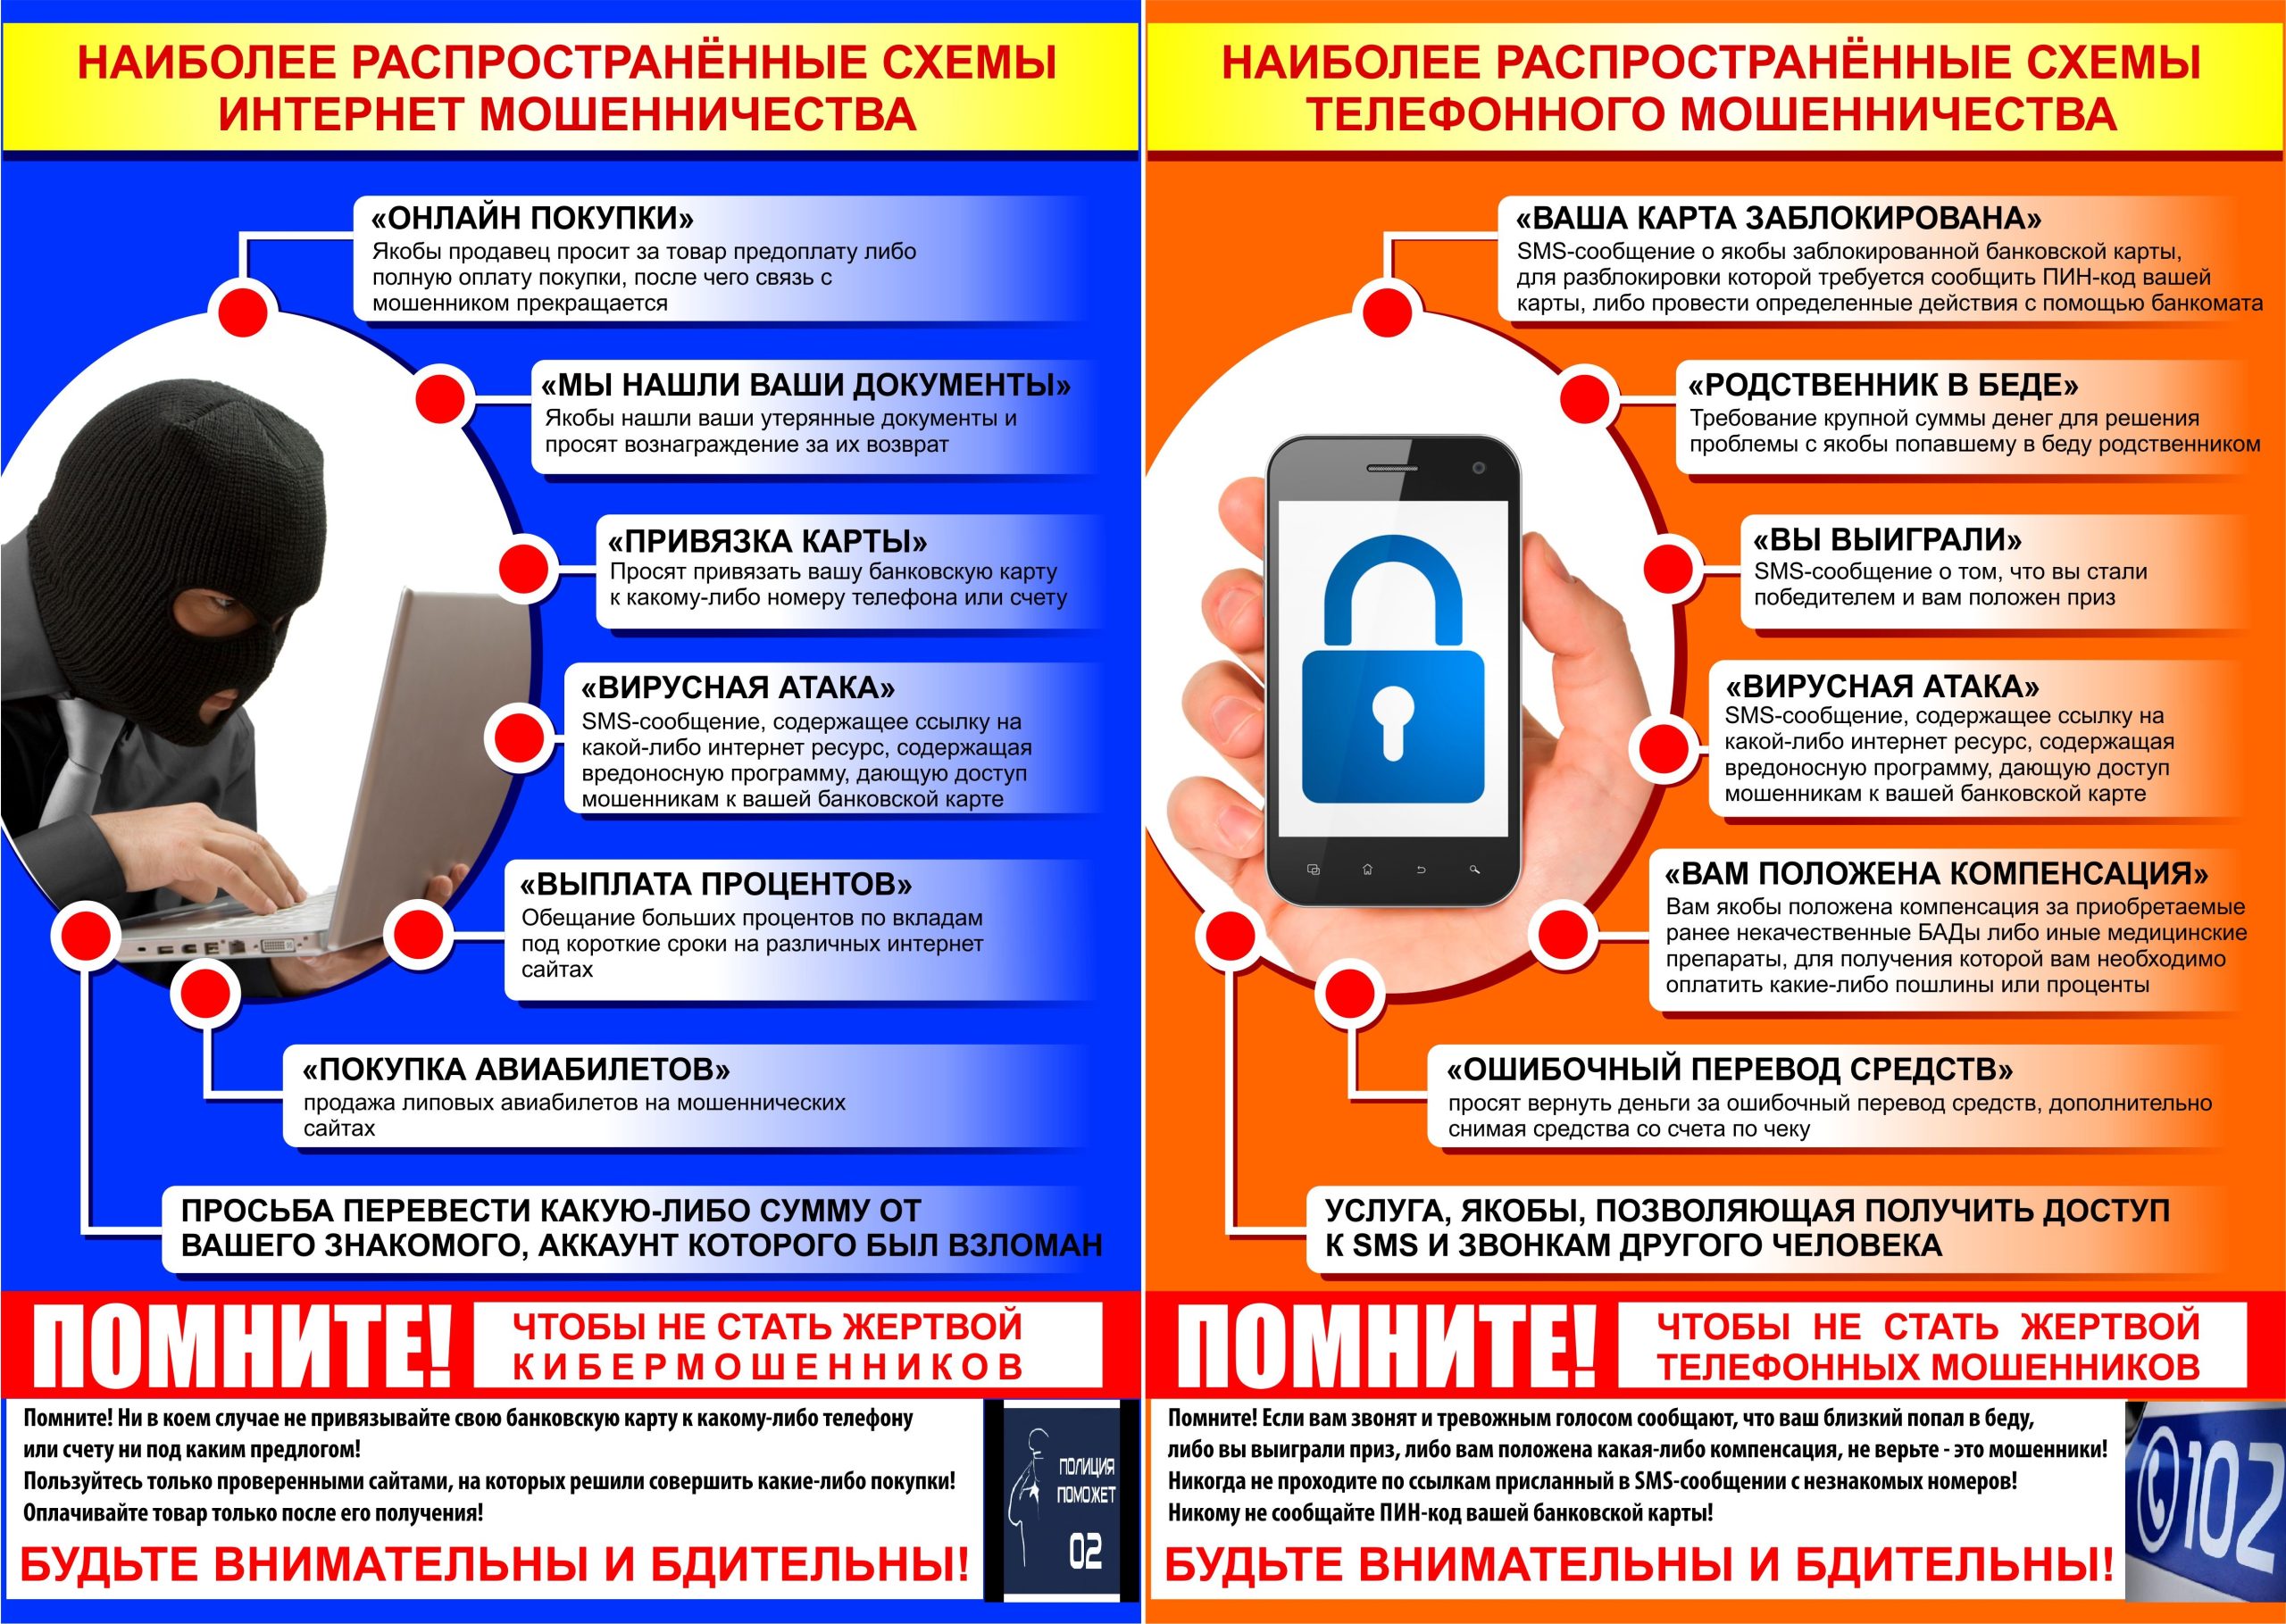 Профилактика хищения денежных средств граждан, совершенных с использованием информационно-коммуникационных технологий на территории Свердловской области